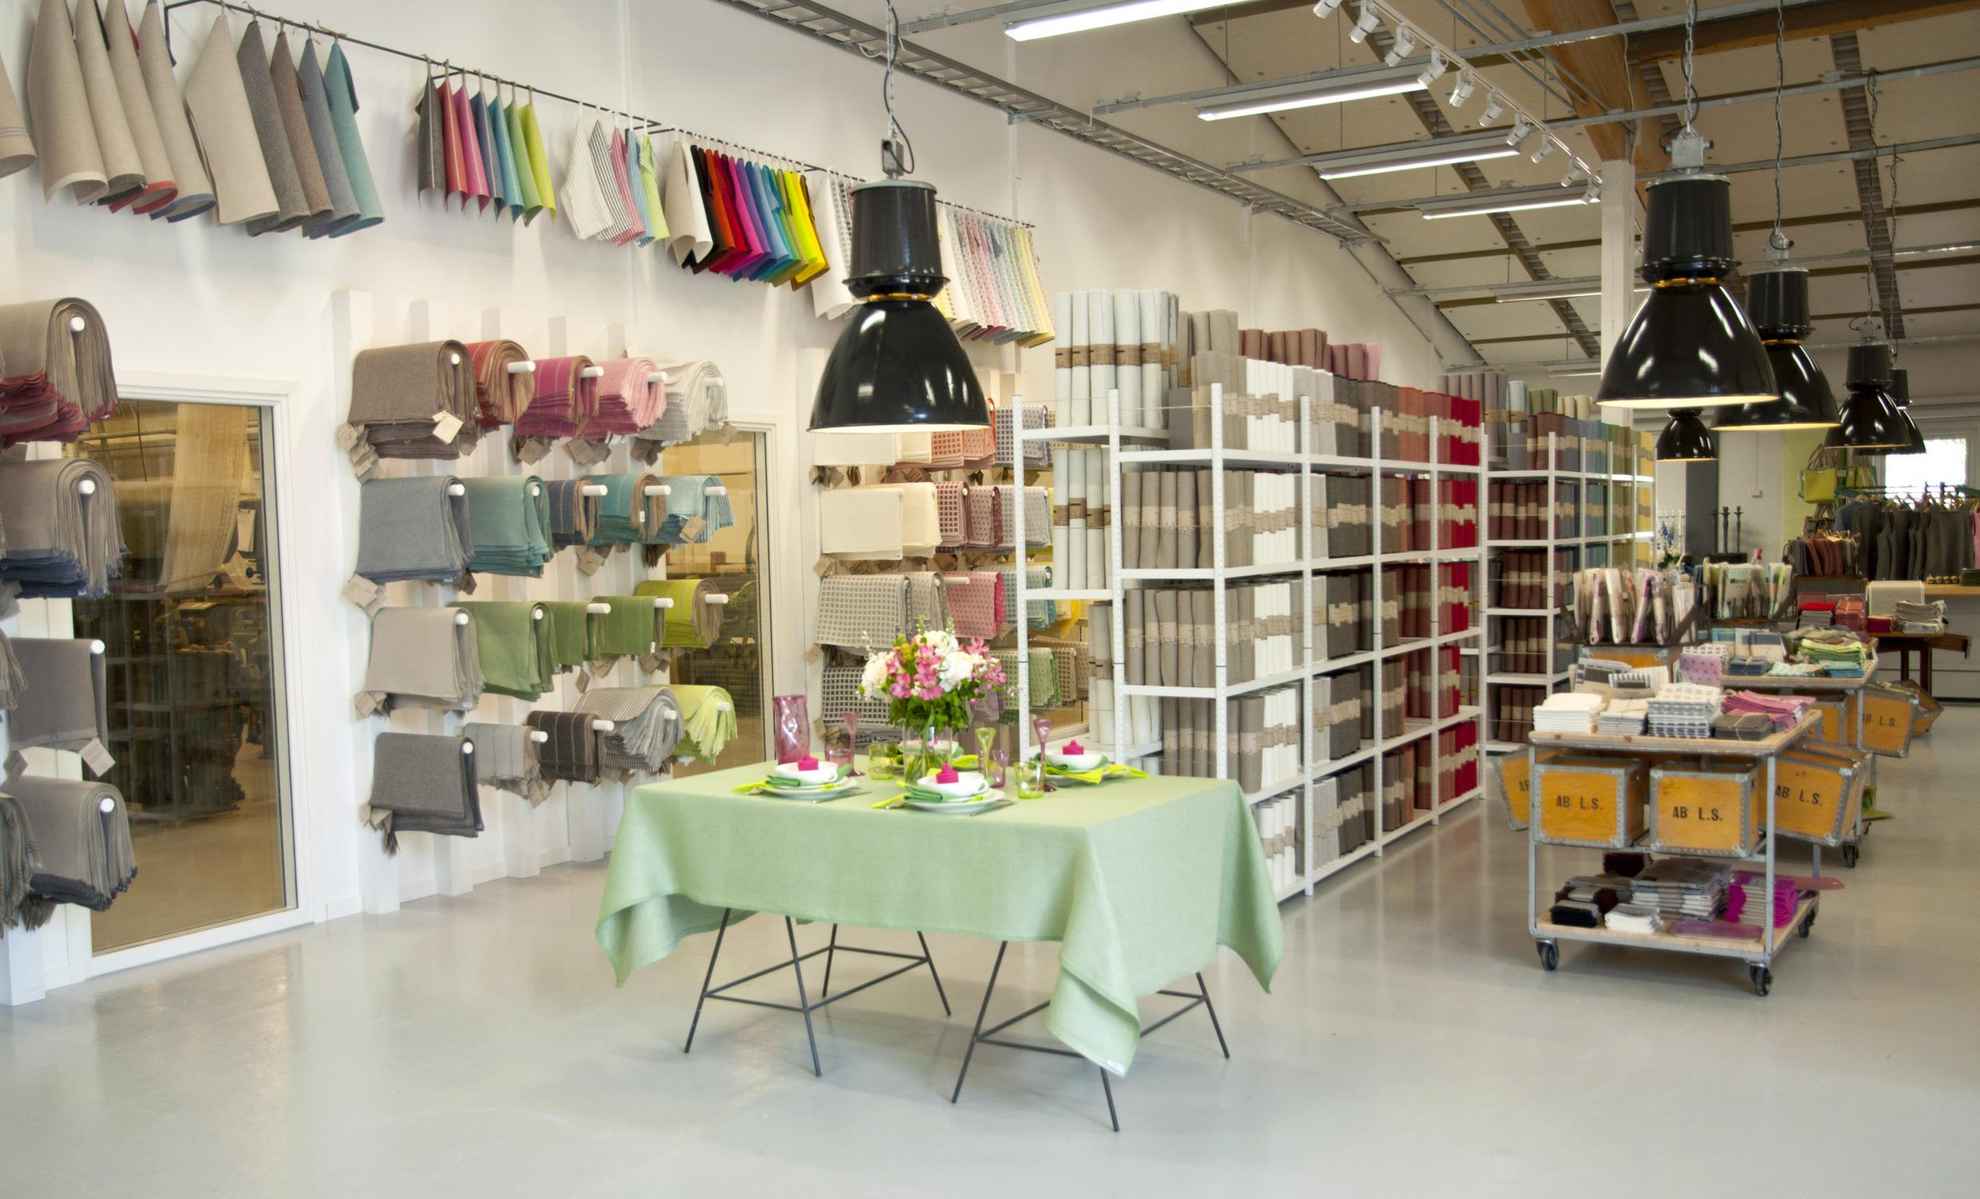 Interieur uit een fabriekswinkel met linnen producten. Planken en tafels met linnen textiel en producten. Een tafelset met een groen tafelkleed en servetten.